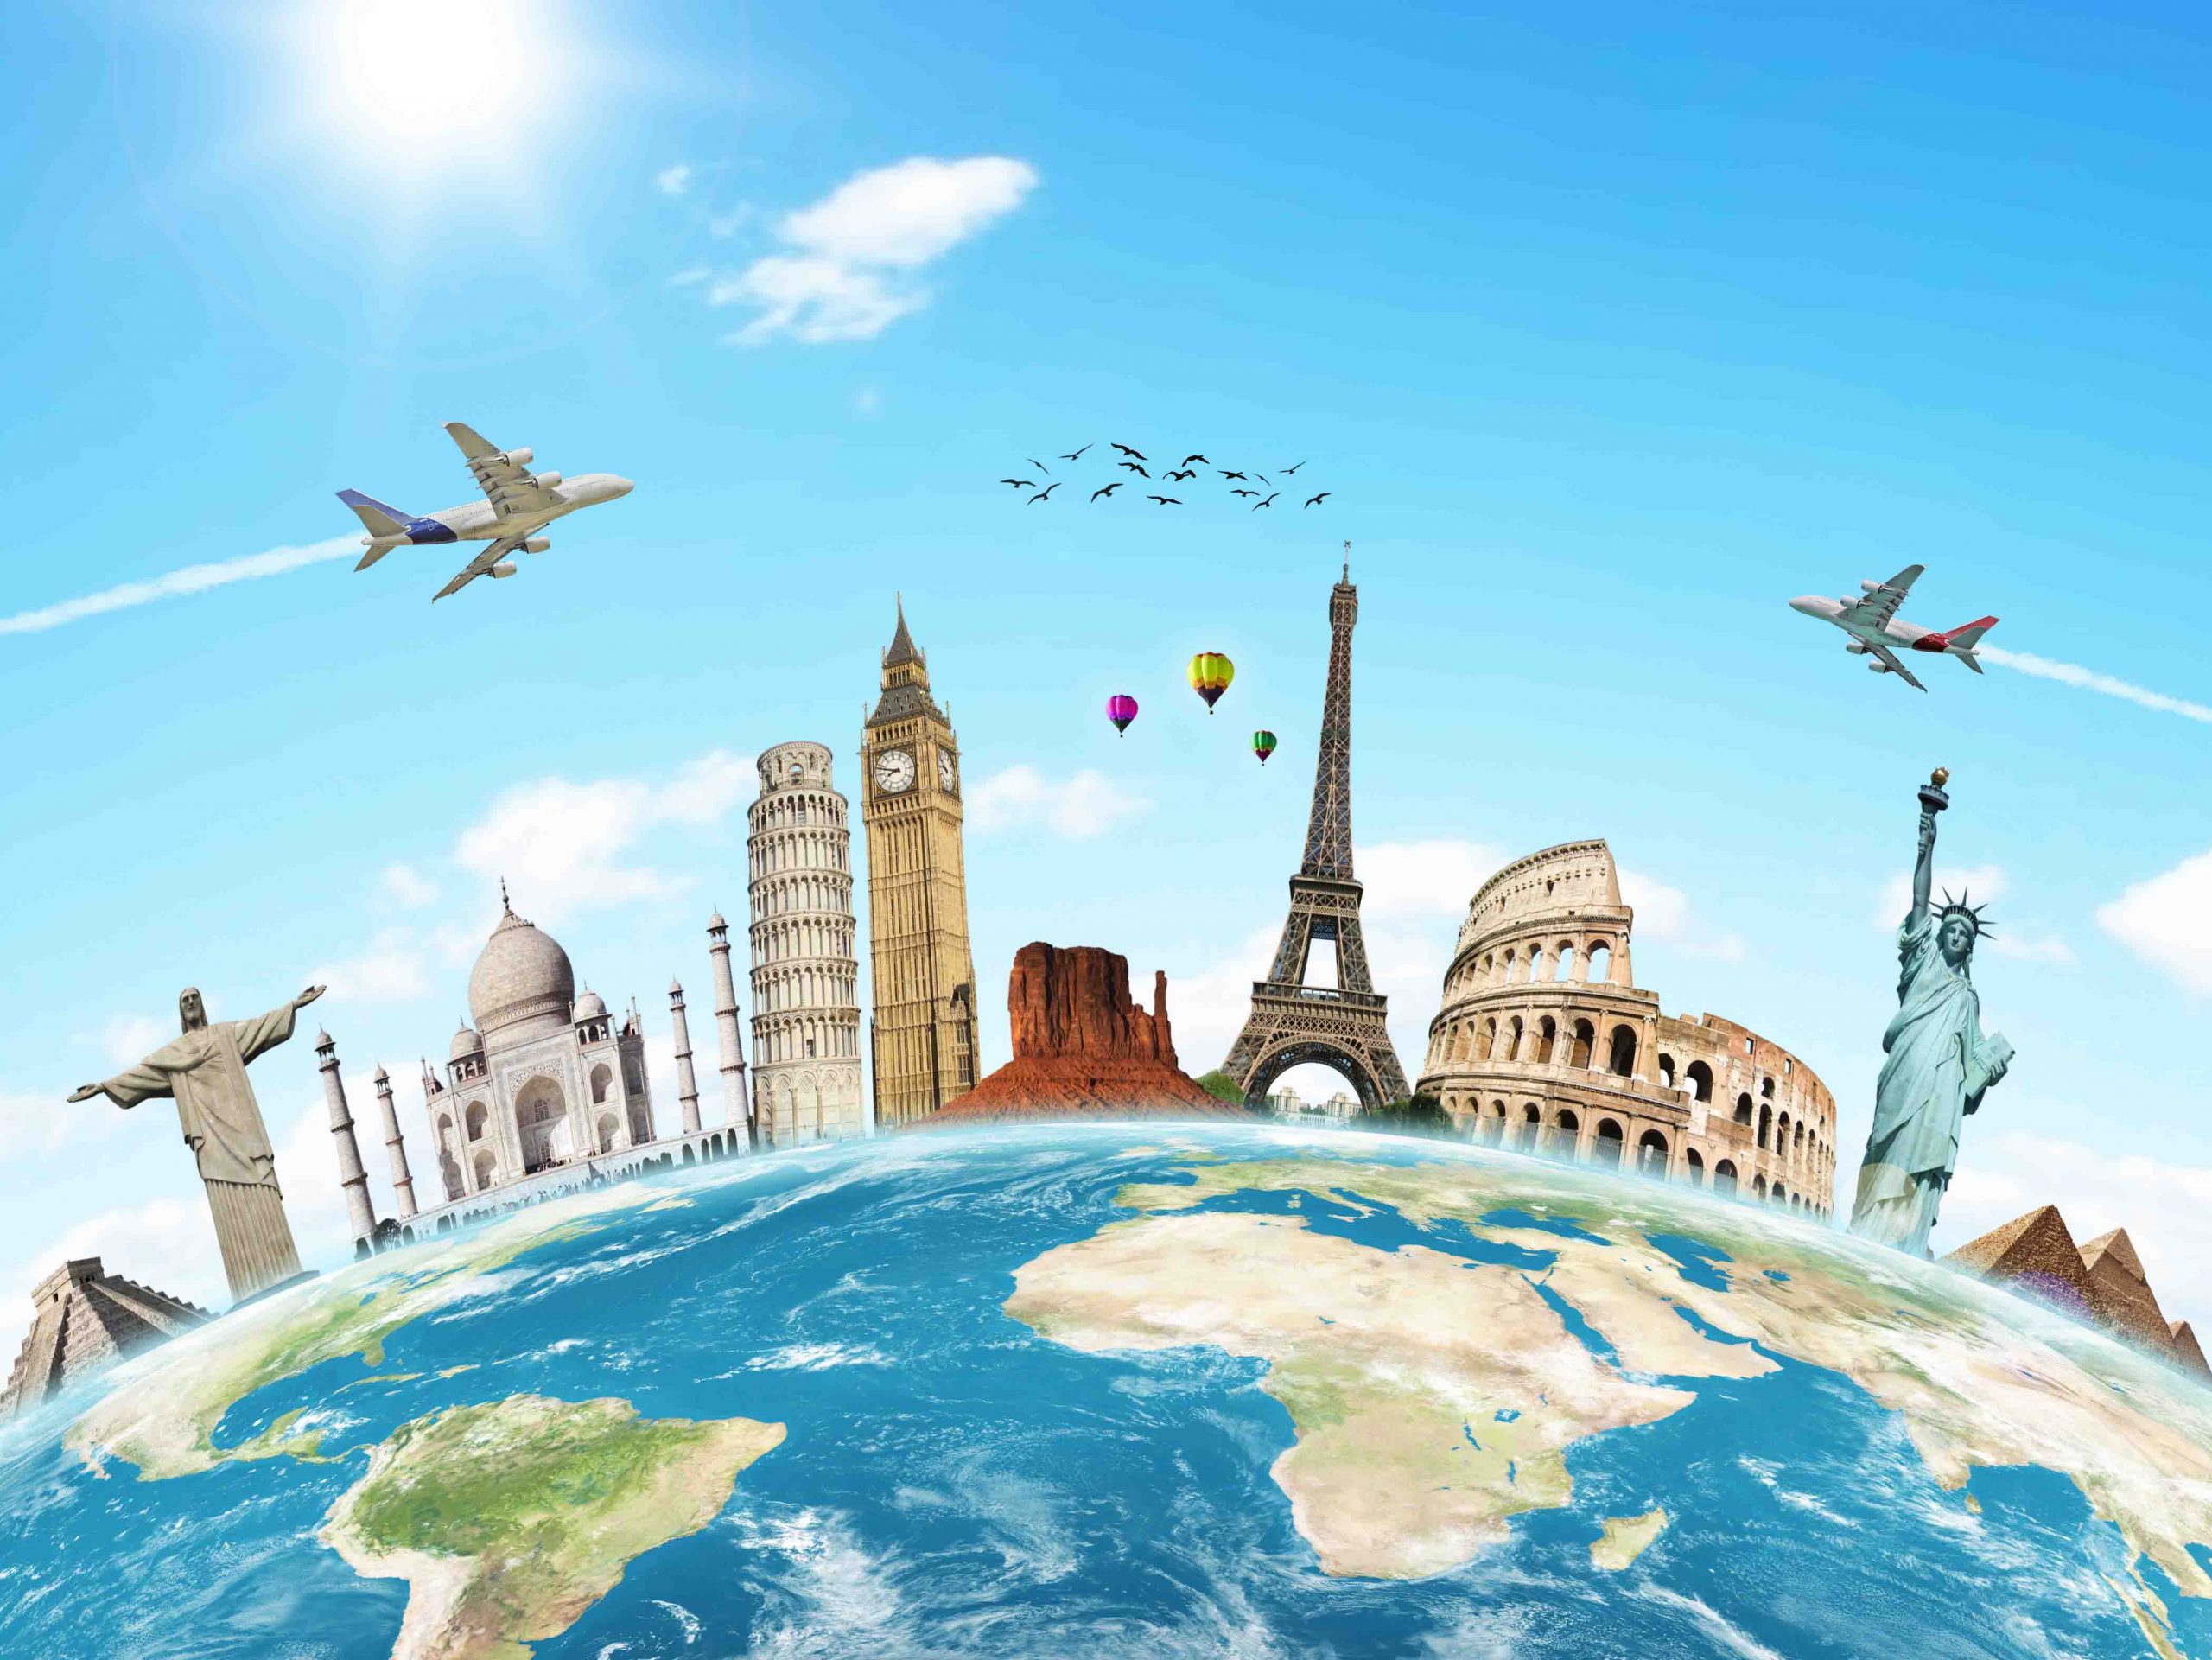 Đi du lịch nước ngoài cần phải chuẩn bị những thứ gì?